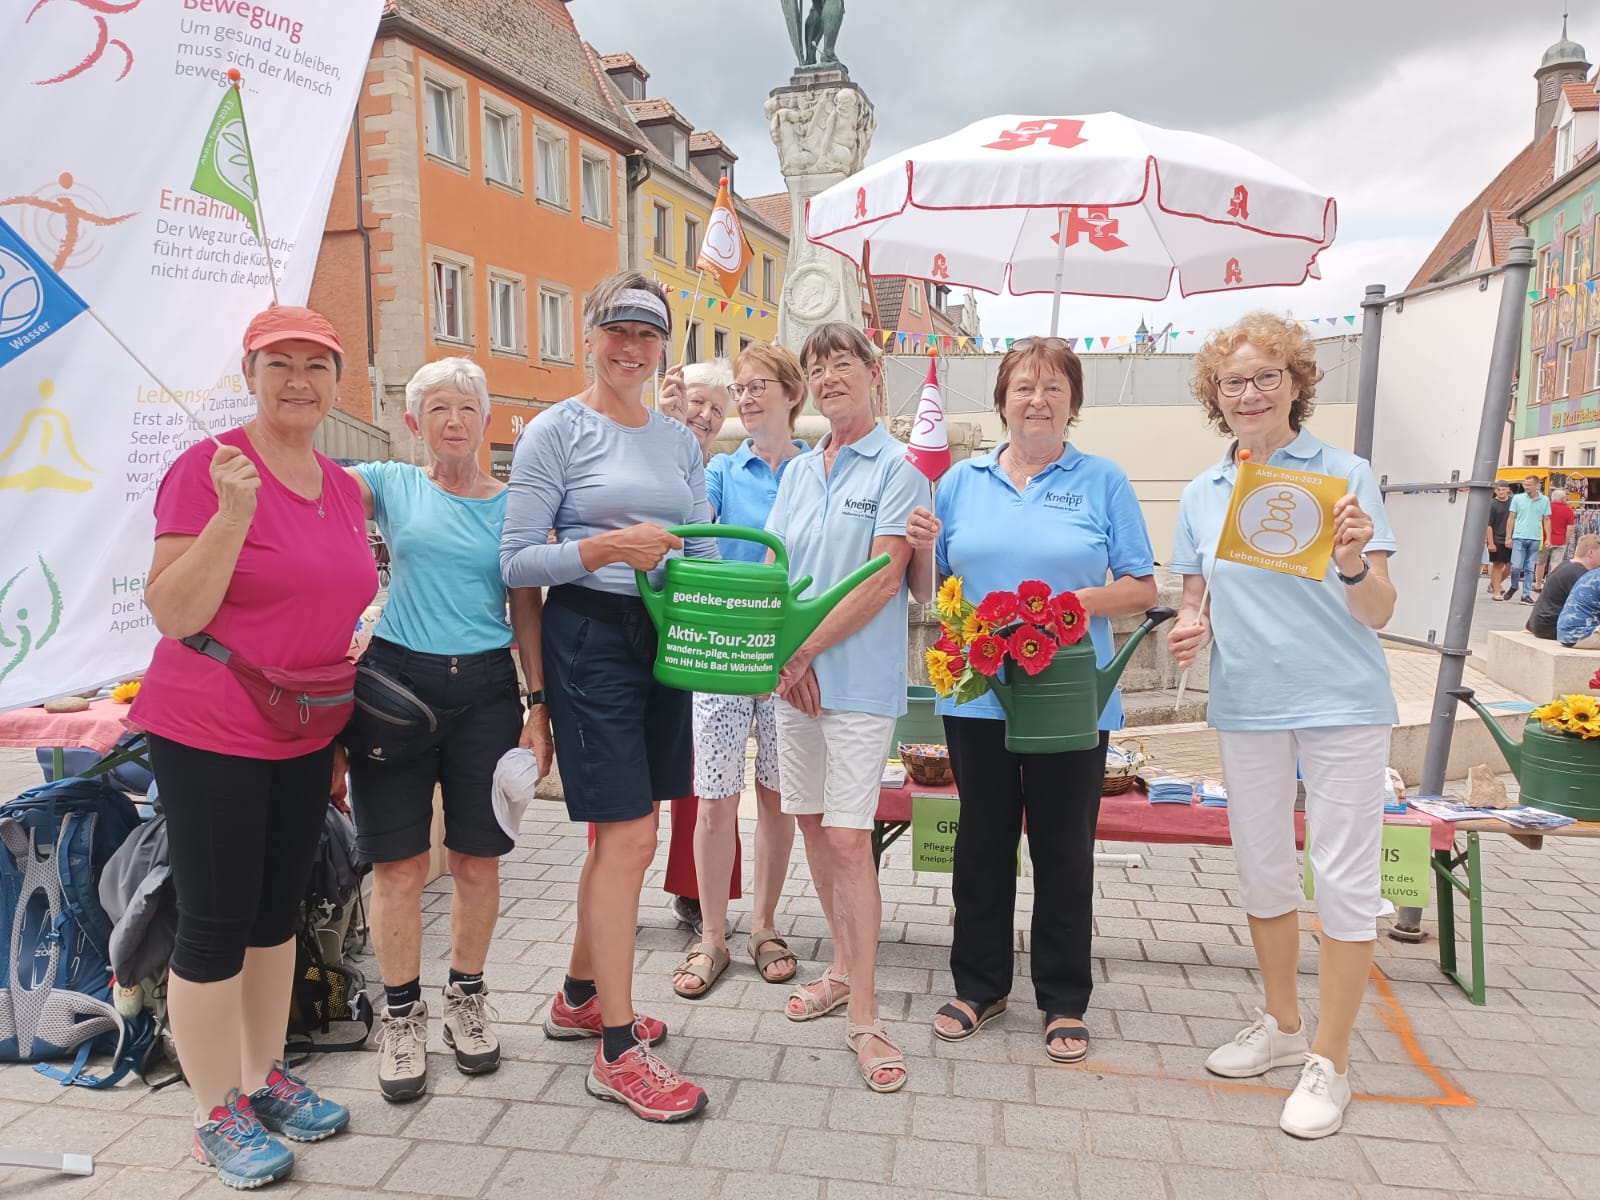 Tag 23 - Gesundheit für alle - auf dem Altstadtfest in Weißenburg